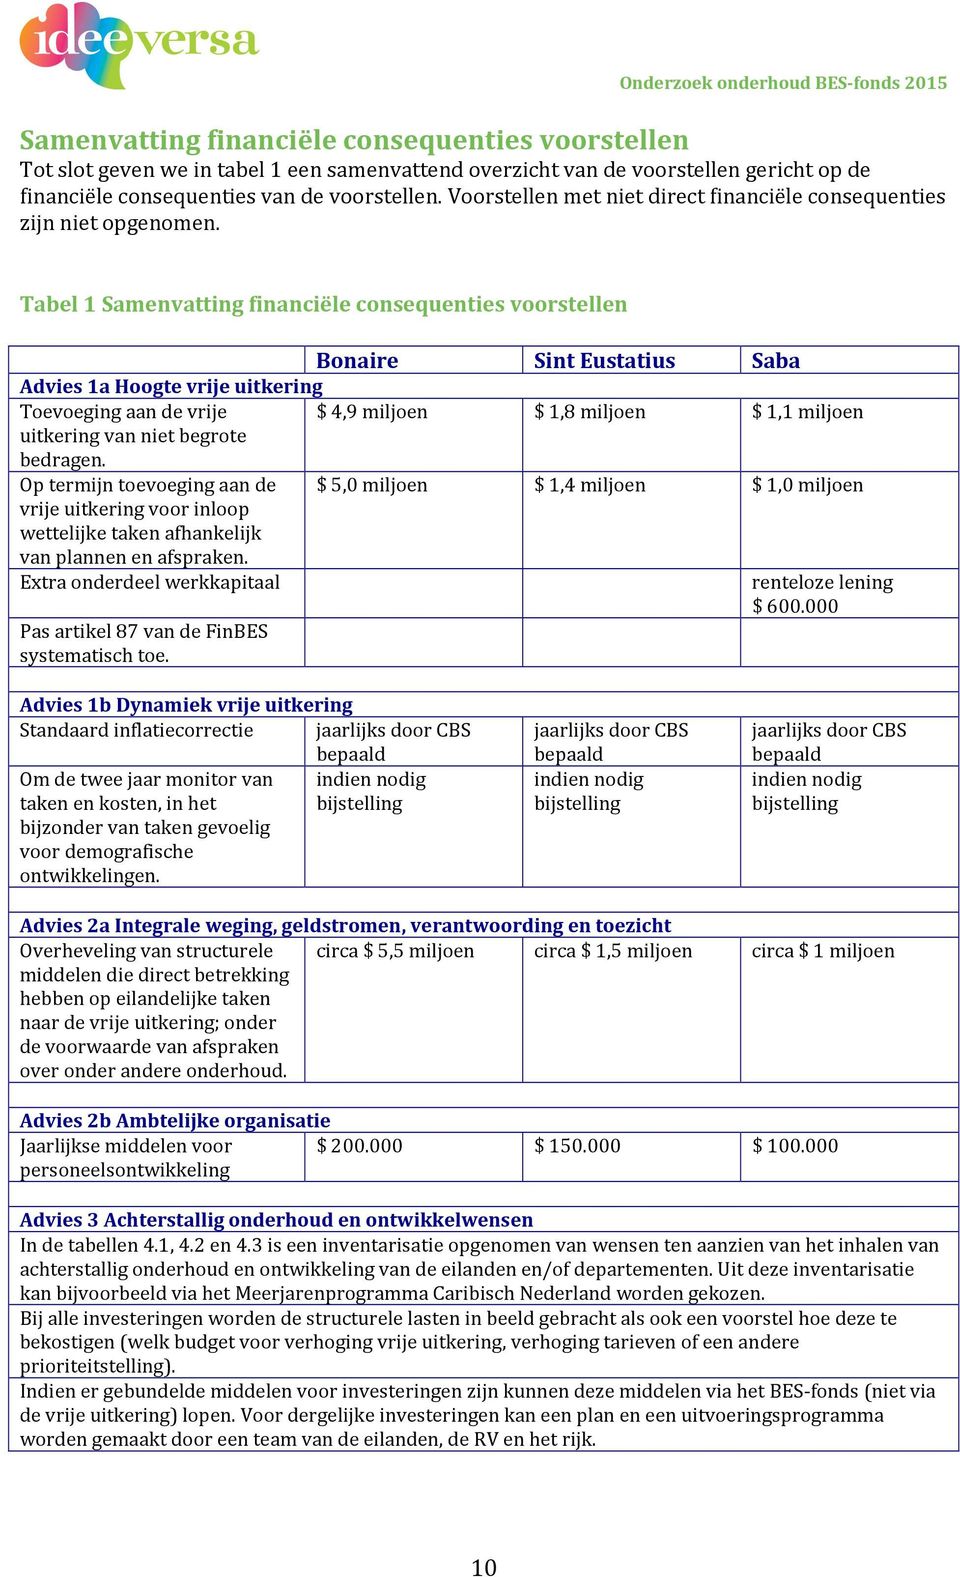 Tabel 1 Samenvatting financiële consequenties voorstellen Bonaire Sint Eustatius Saba Advies 1a Hoogte vrije uitkering Toevoeging aan de vrije $ 4,9 miljoen $ 1,8 miljoen $ 1,1 miljoen uitkering van